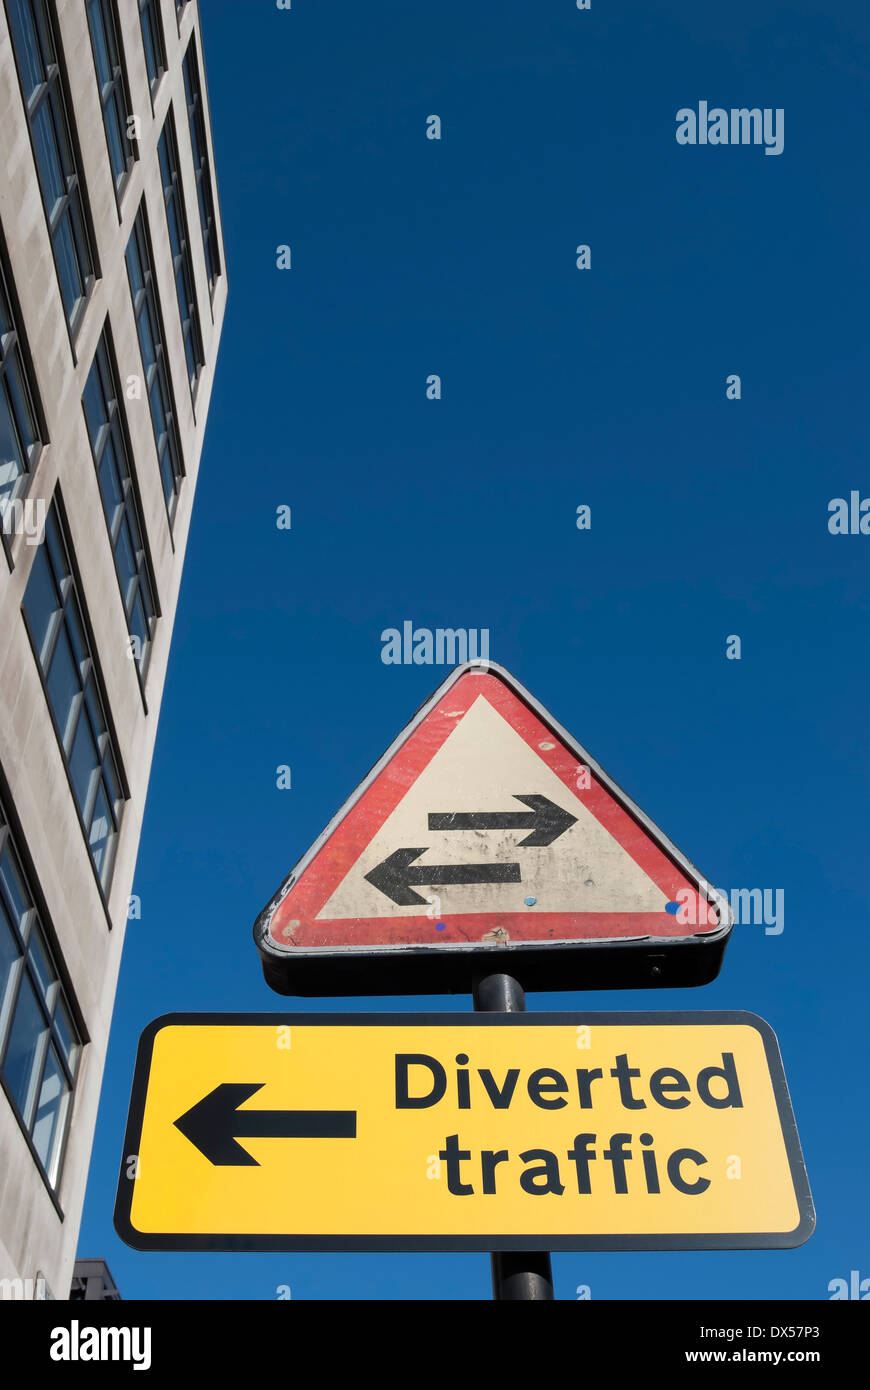 British cartelli stradali che indicano una strada a doppio senso in avanti  e la direzione per il traffico deviato, Londra, Inghilterra Foto stock -  Alamy